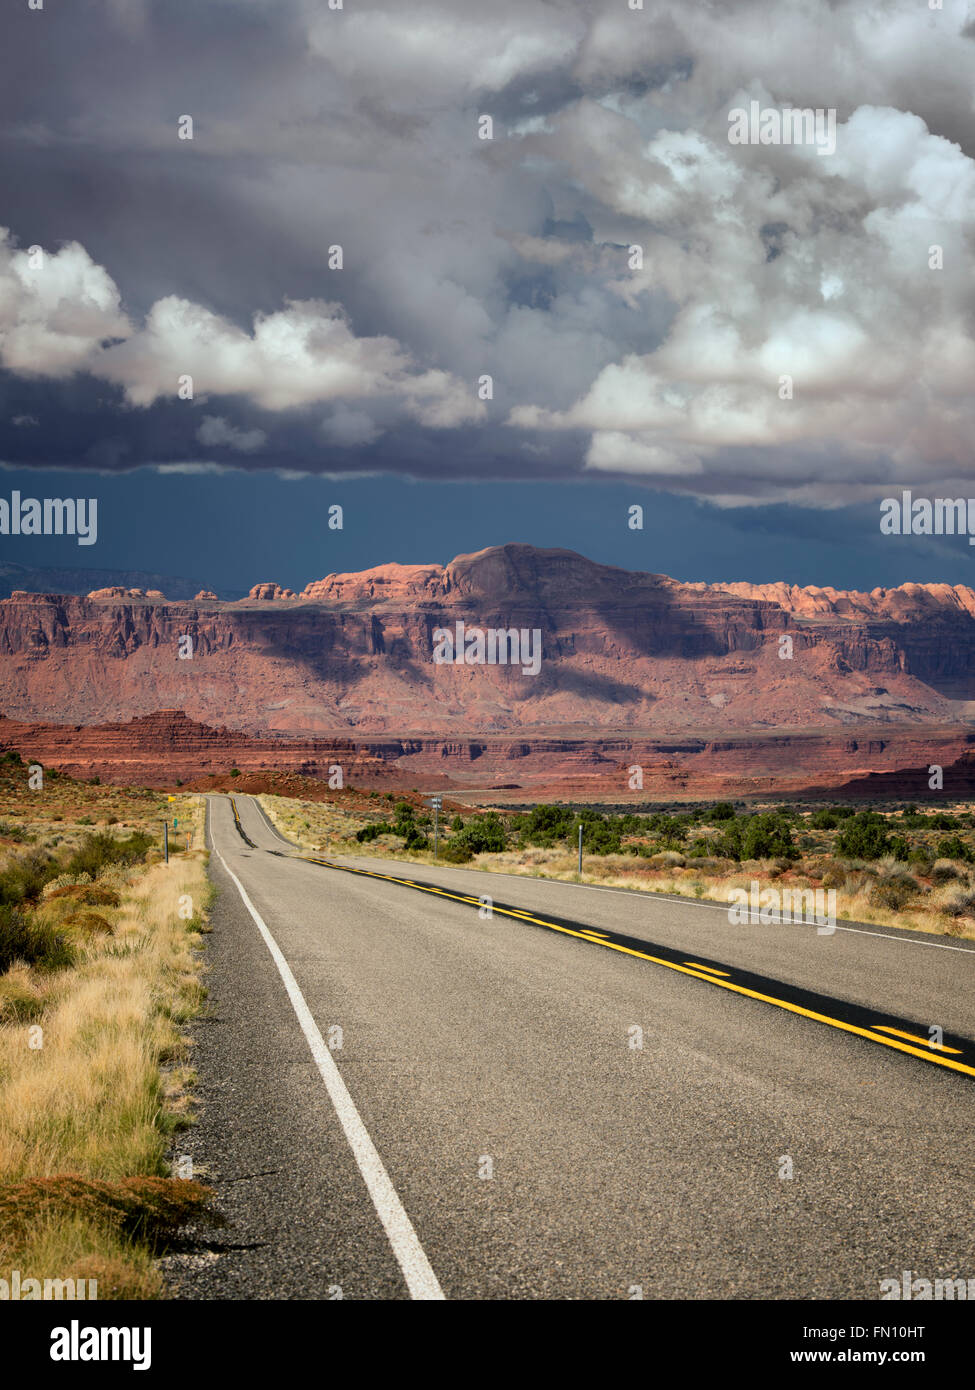 La route et les montagnes avec les nuages de tempête. Scenic Byway Hwy 95, Glen Canyon National Recreation Area, Utah Banque D'Images